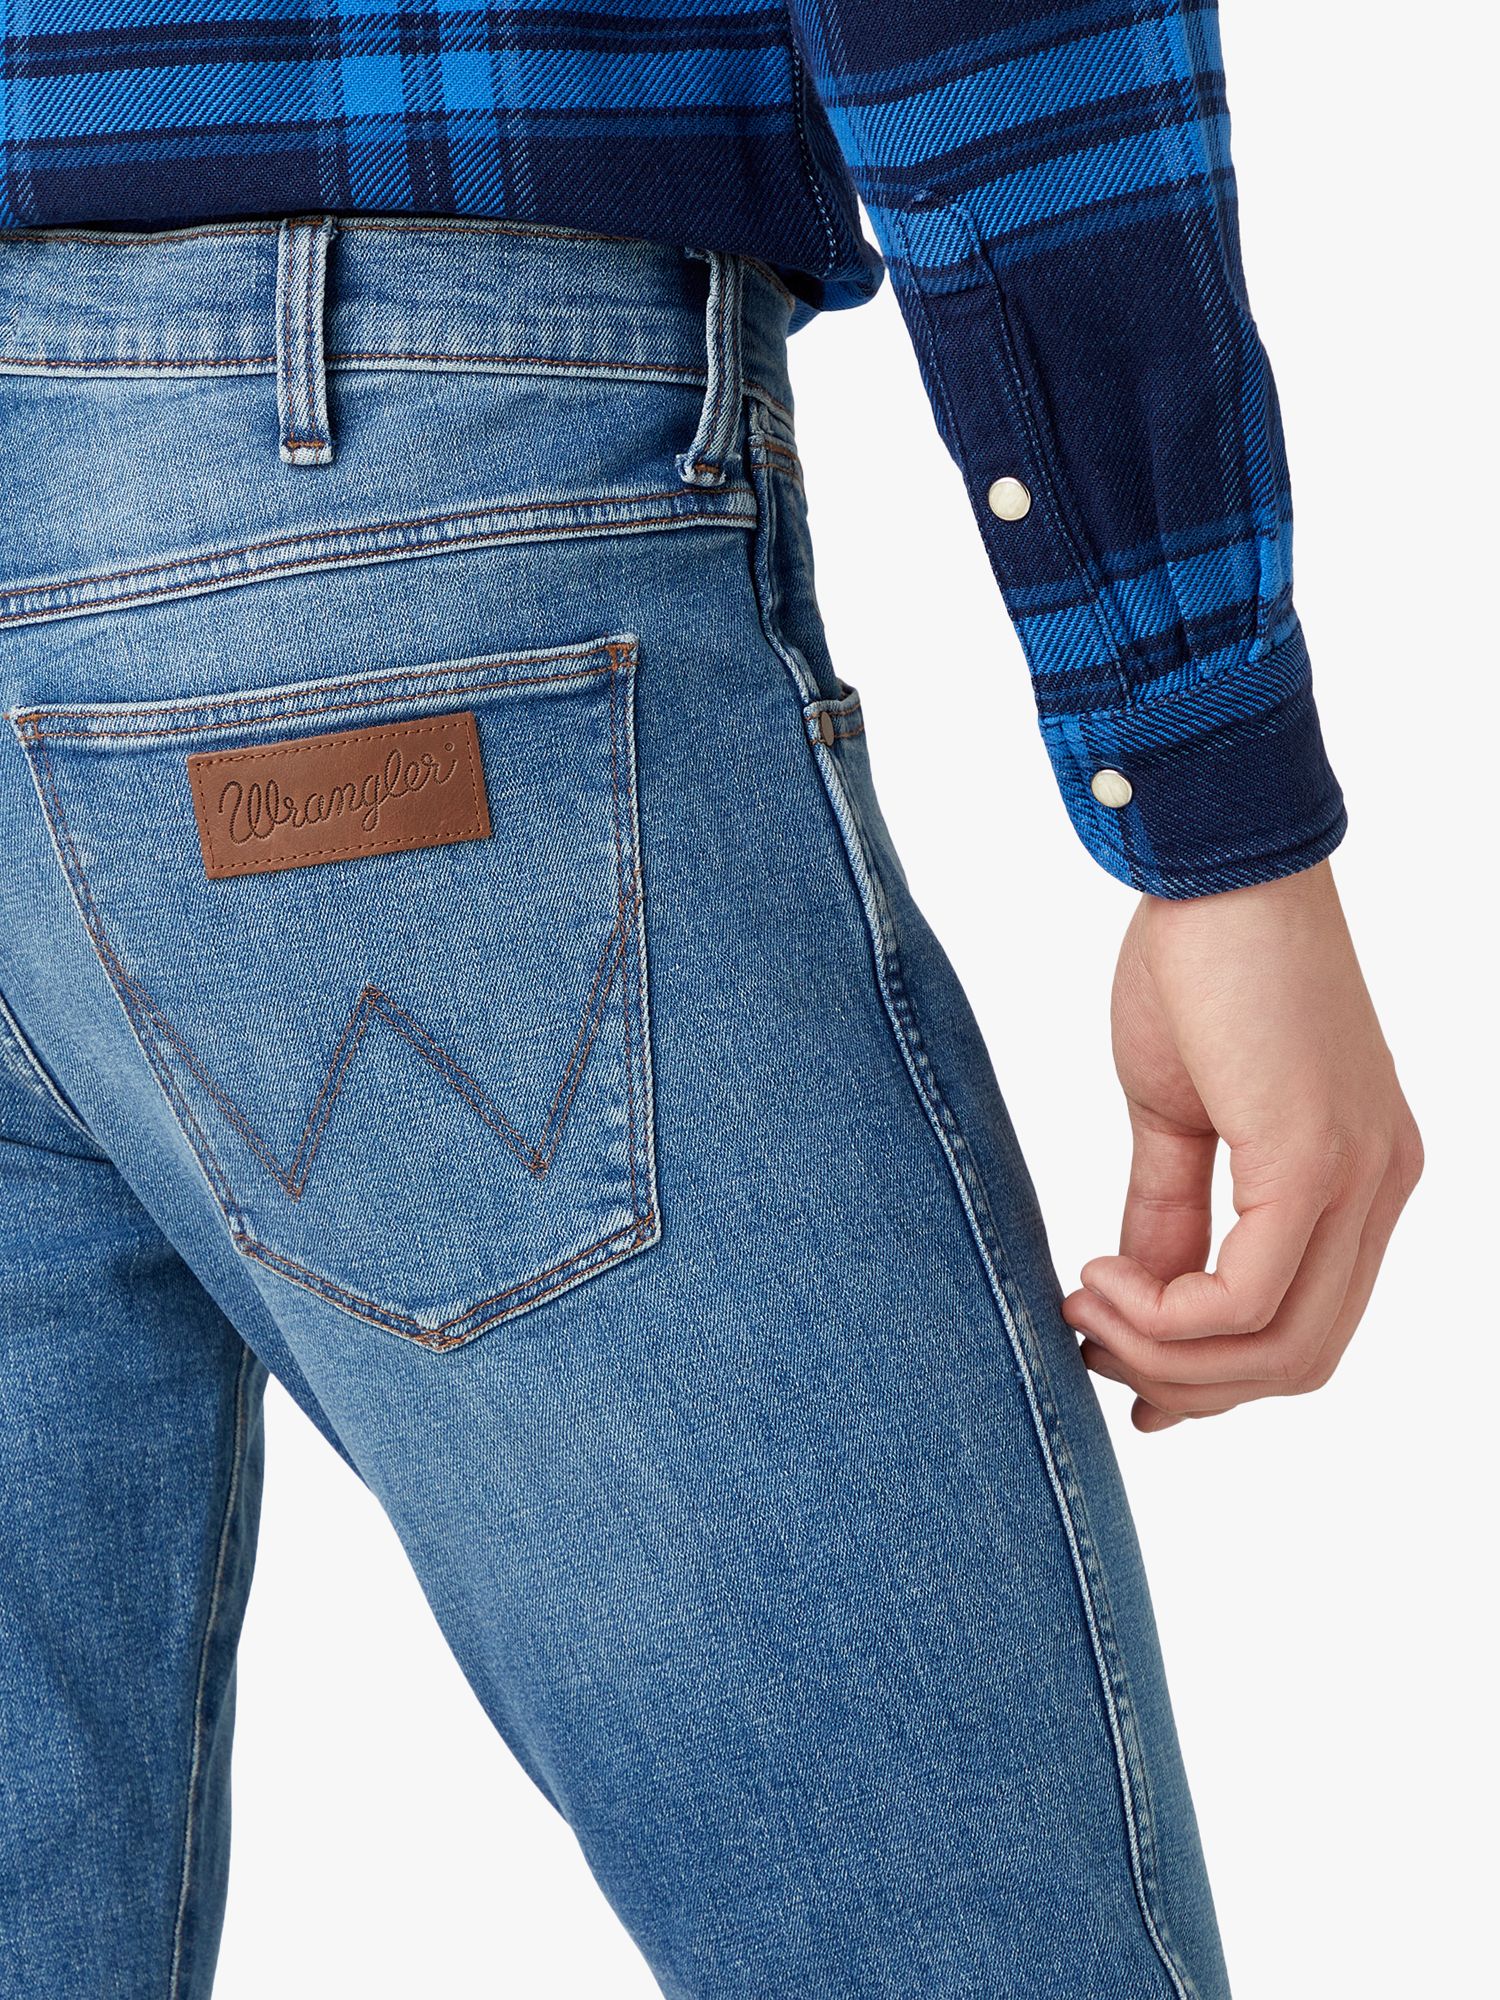 Wrangler Larston Slim Fit Jeans, Blue at John & Partners